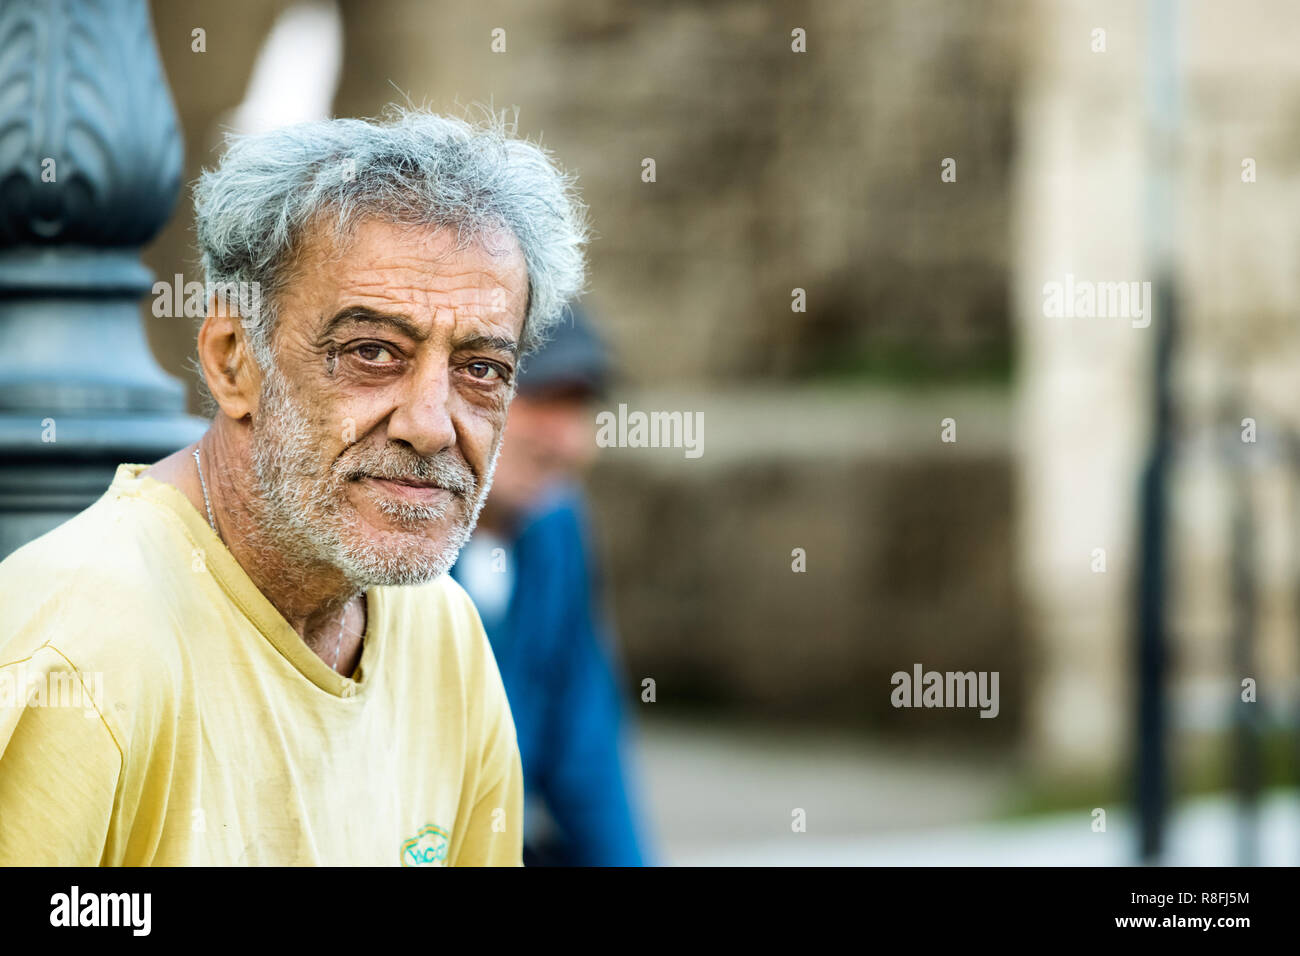 Rhodes, Grèce - 10 octobre 2018 : Portrait d'un homme mûr avec des cheveux gris et la barbe, qui travaille dans le port de Rhodes, grecque Banque D'Images